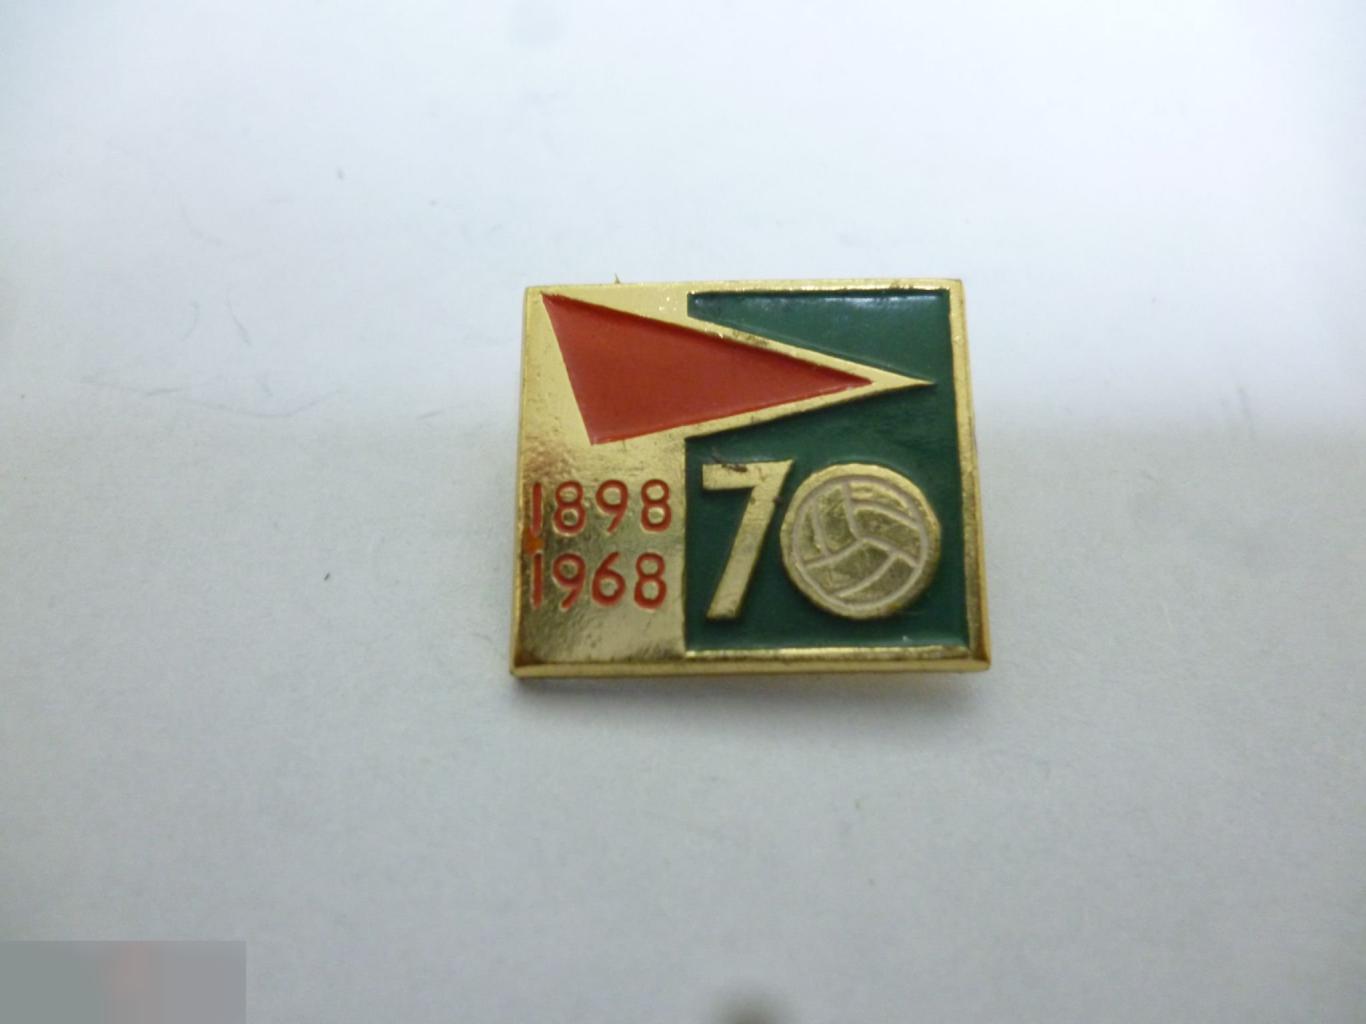 №16 ЦК ВЛКСМ спорт Футбол 1898-1968 70 лет футболу СССР